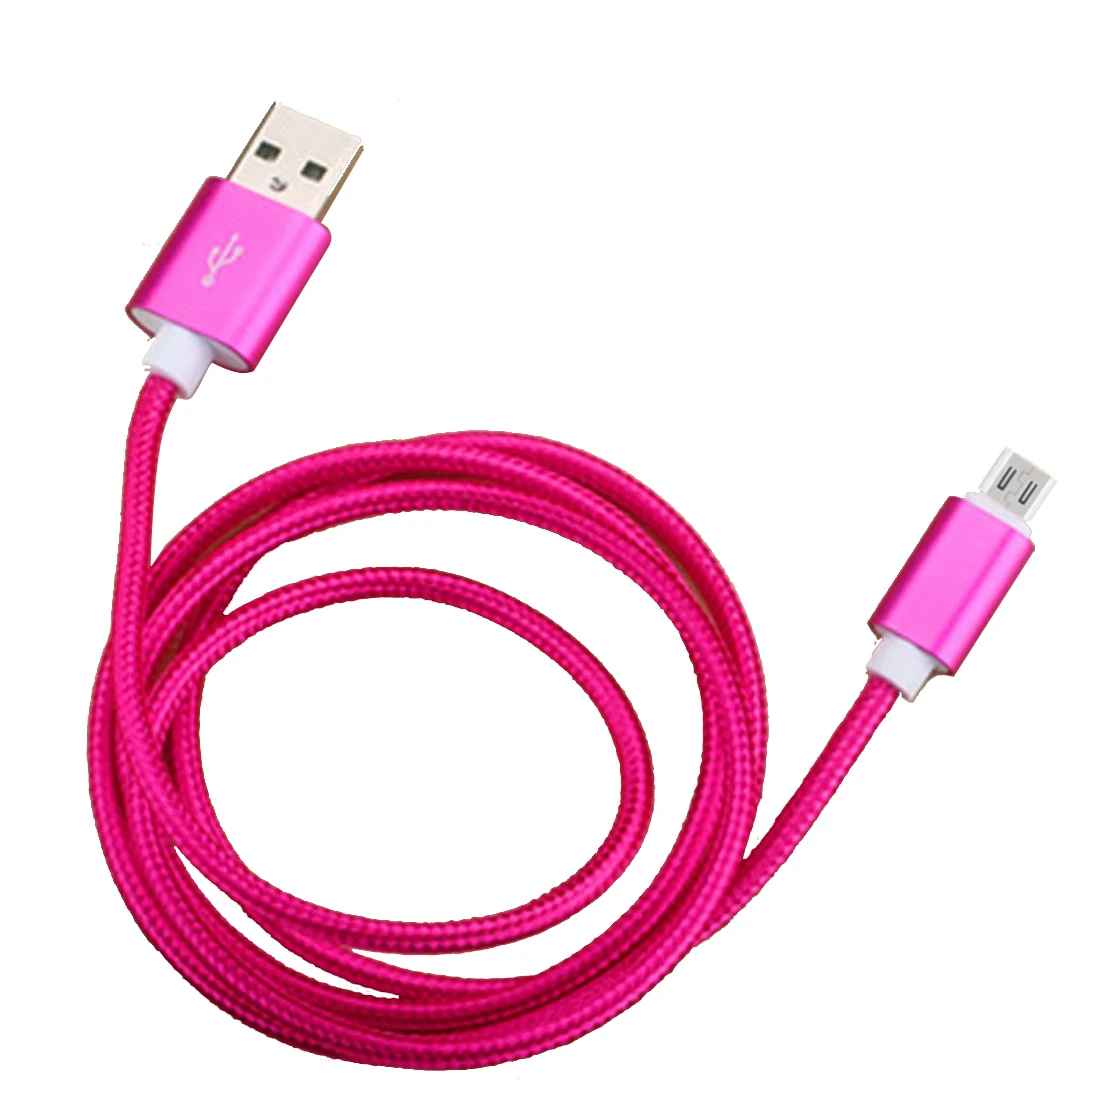 Нейлоновый Кабель Micro-USB в оплетке 1 м/2 м Синхронизация данных USB кабель зарядного устройства для samsung htc LG huawei xiaomi кабели для телефонов Android - Тип штекера: Rose red